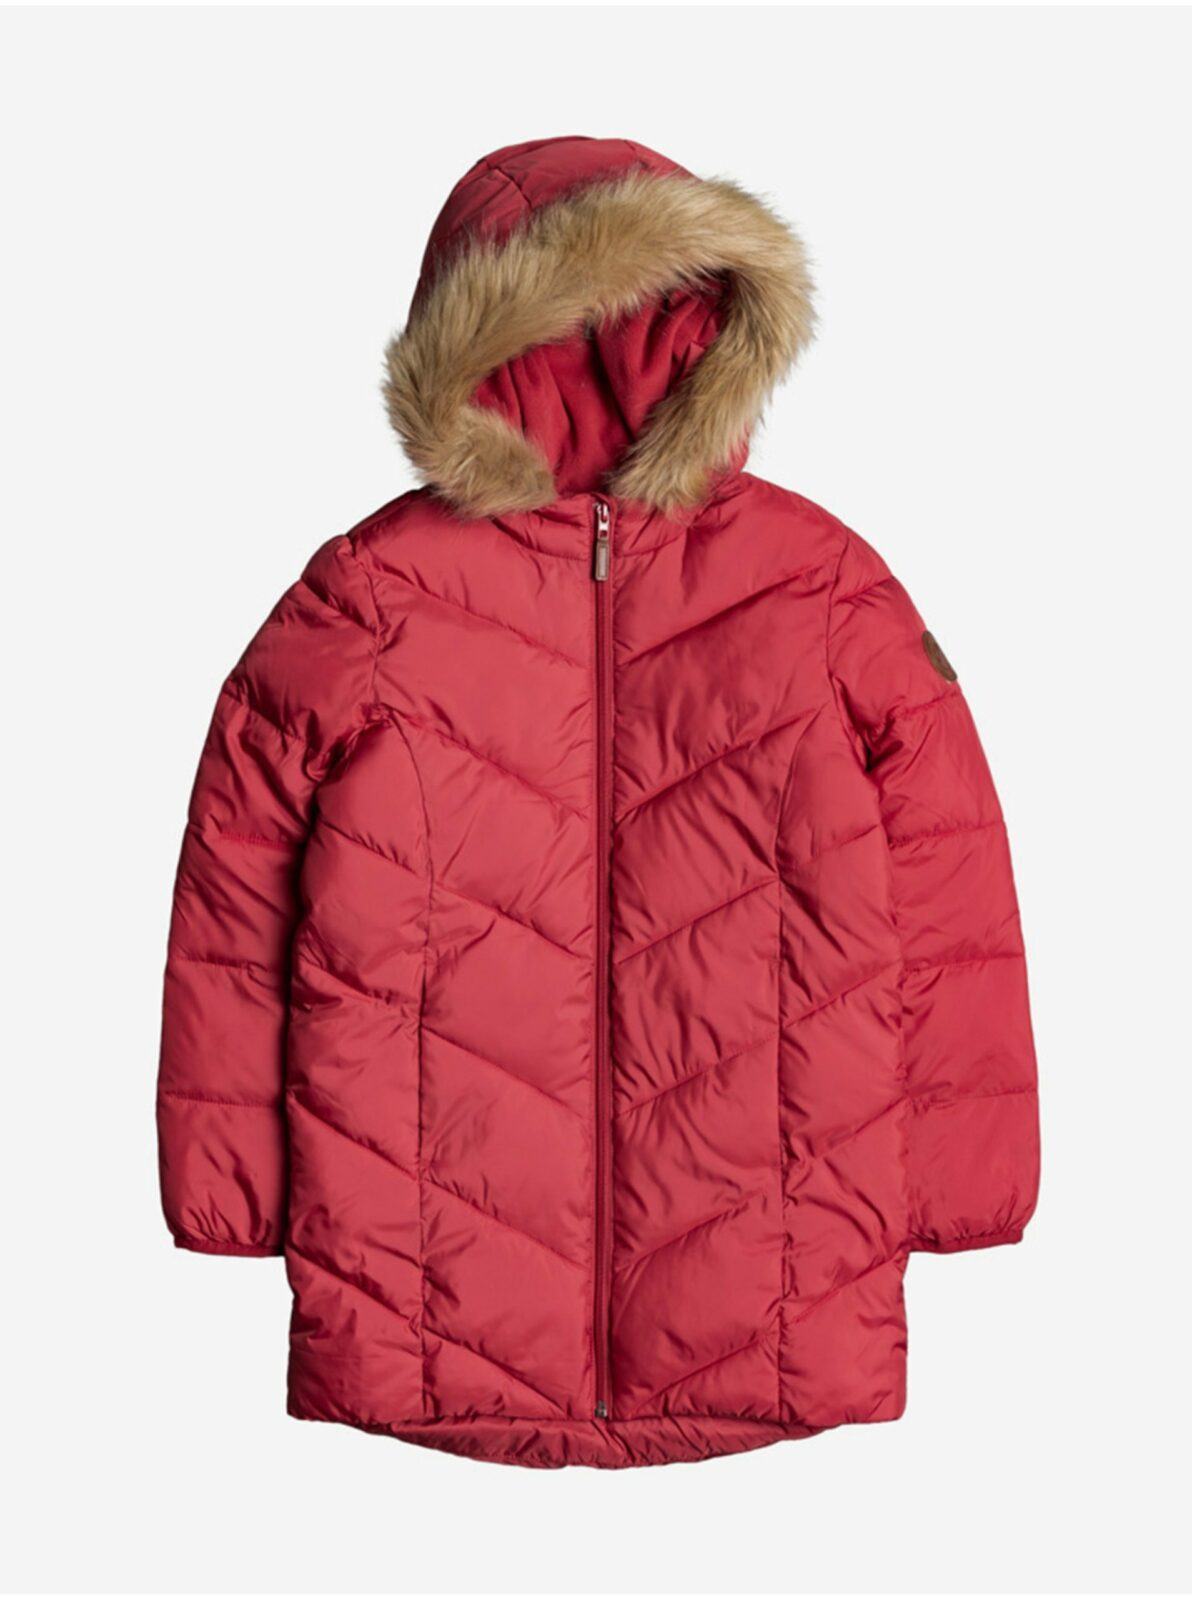 Červená holčičí zimní bunda Roxy